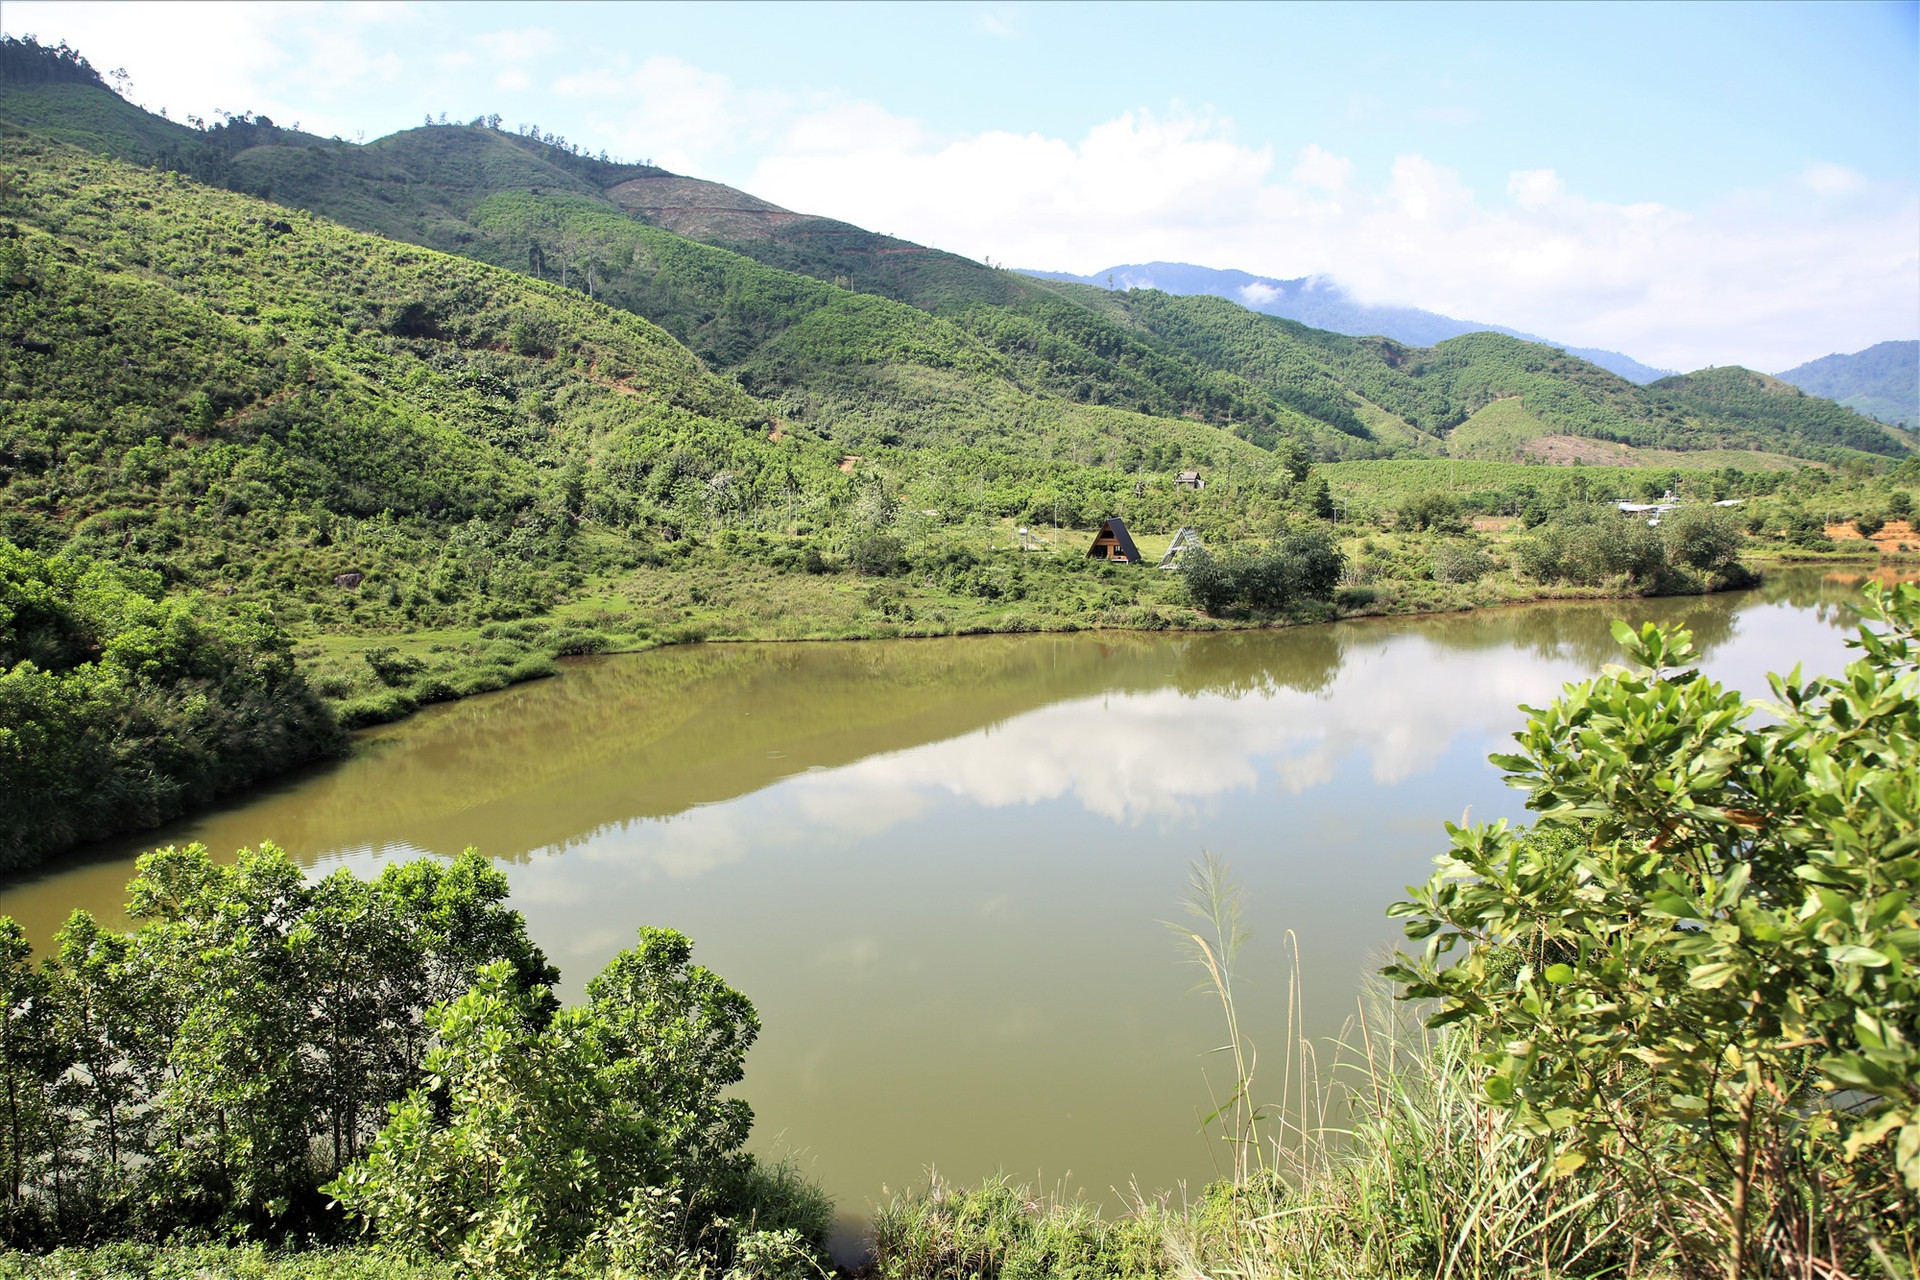 Với vẻ đẹp tự nhiên, hồ Ban Mai (xã Ba) được kỳ vọng sẽ trở thành điểm du lịch trải nghiệm hấp dẫn cho du khách. Ảnh: A.N